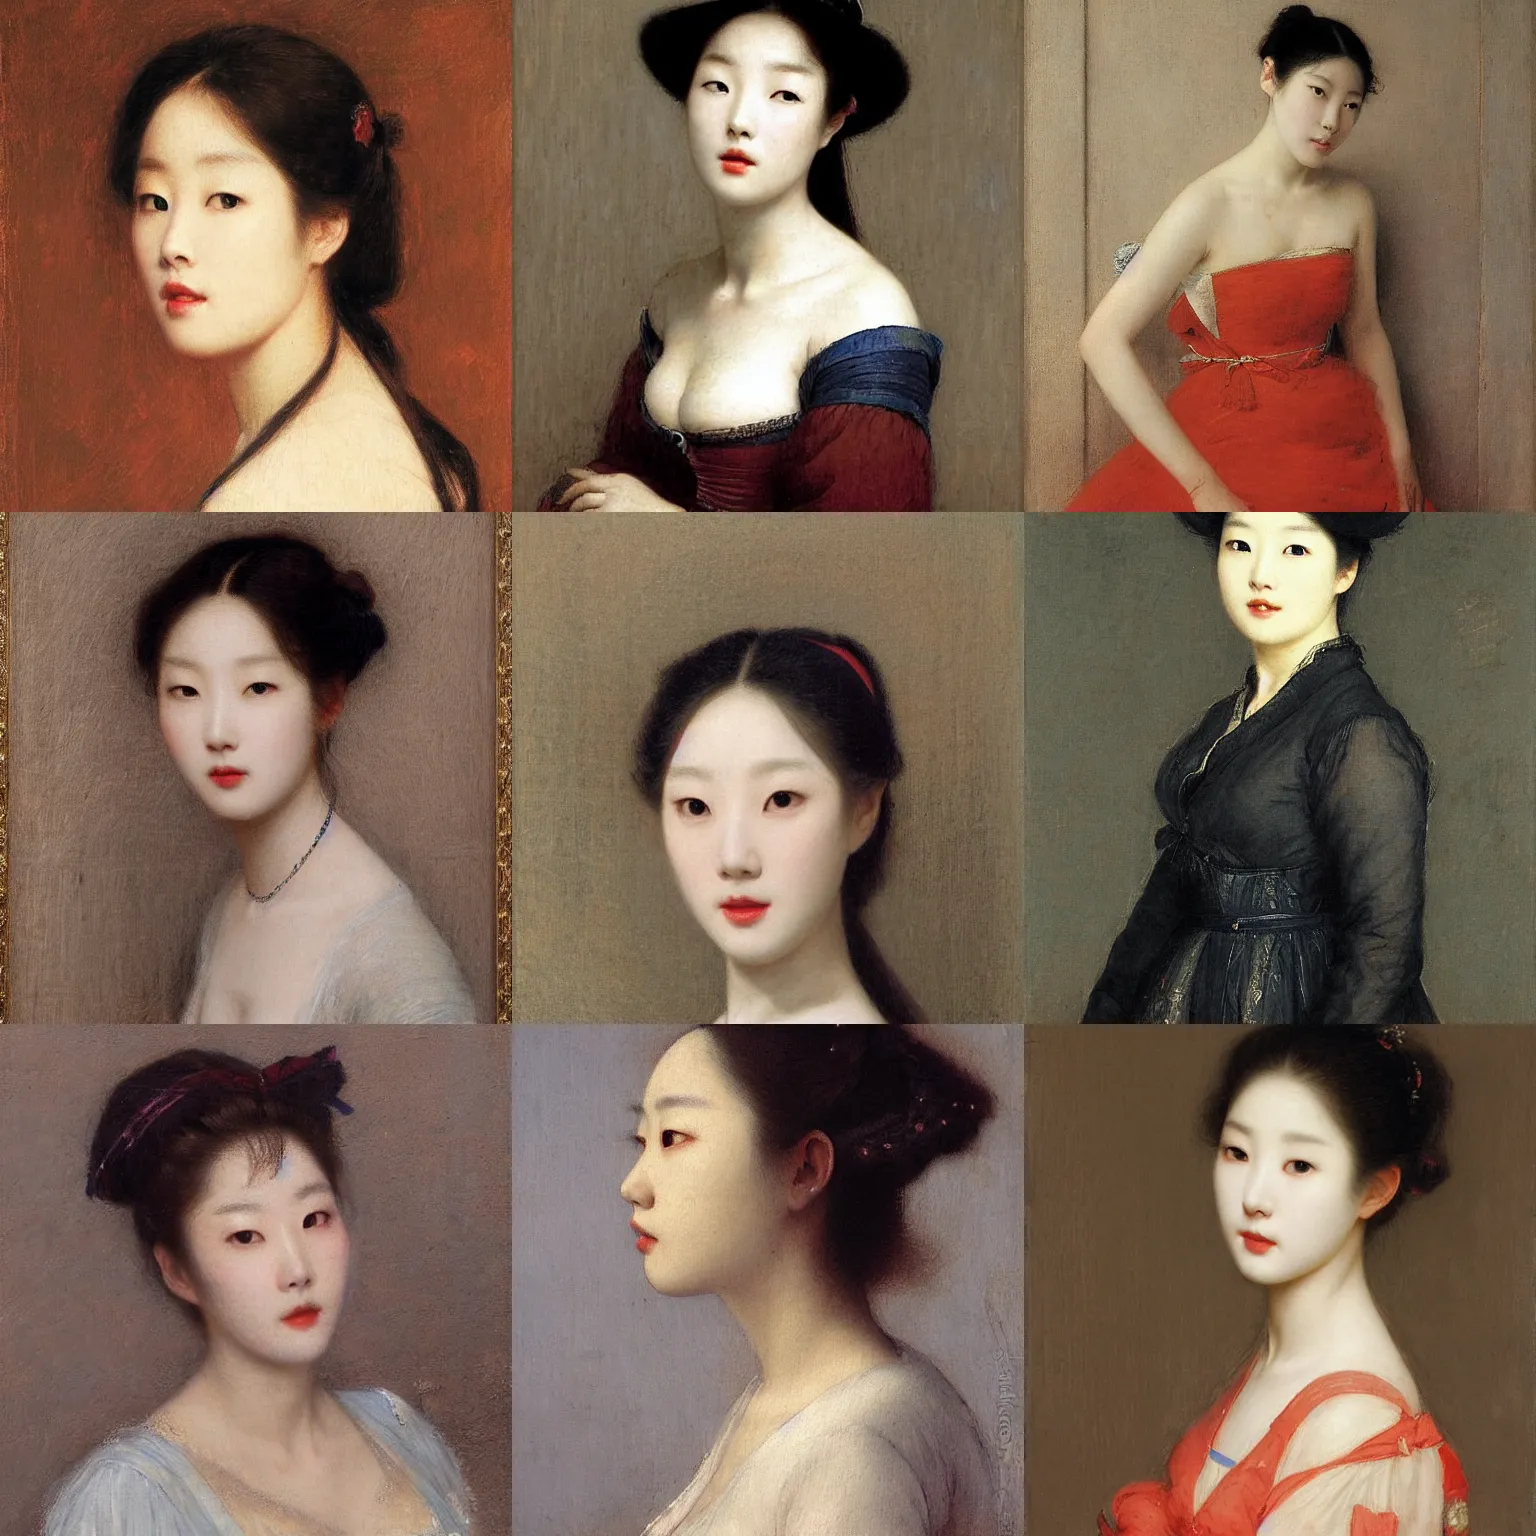 Prompt: lee jin - eun by eugene de blaas, rule of thirds, seductive look, beautiful